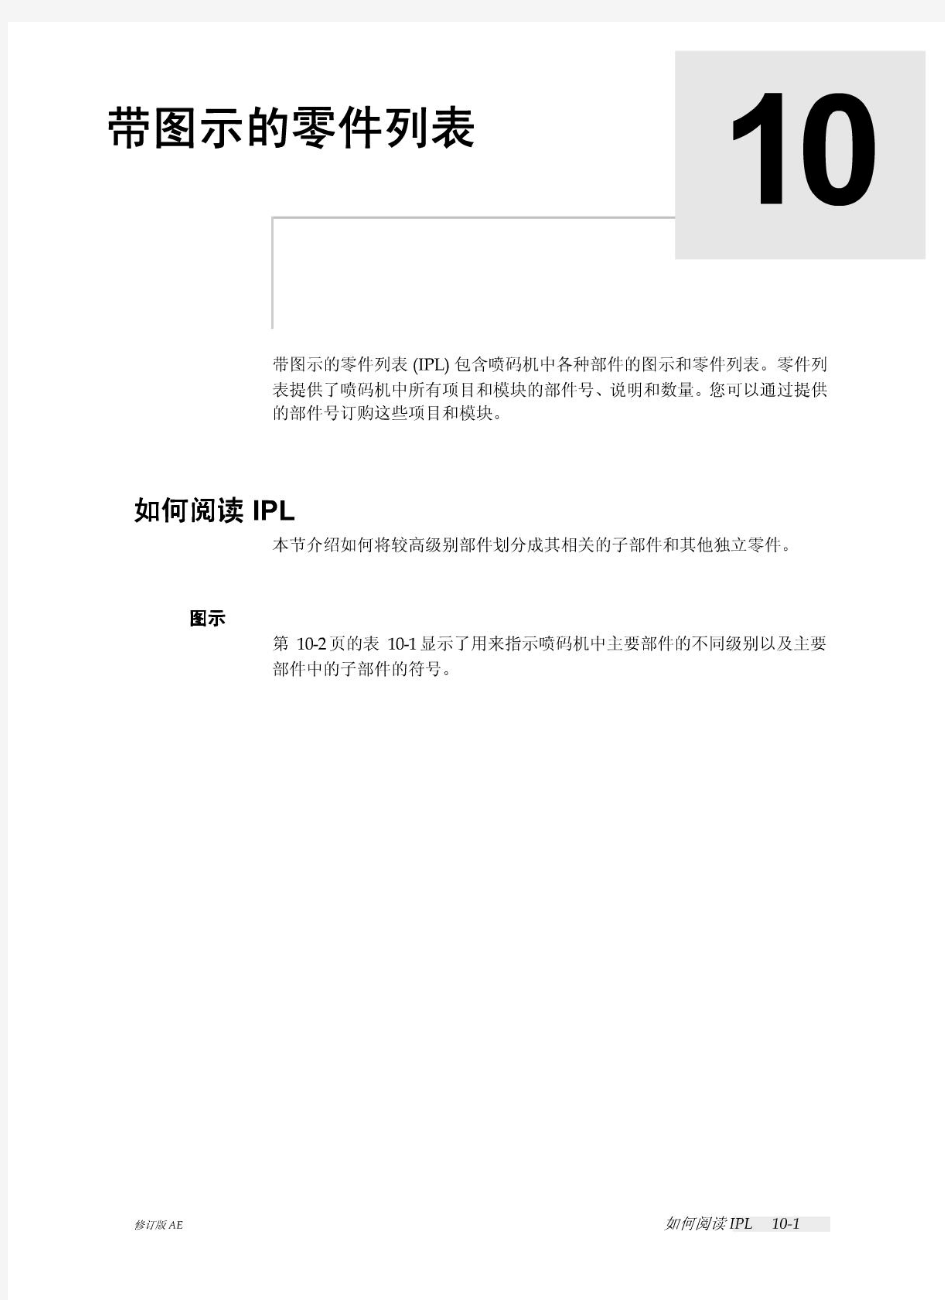 伟迪捷喷码机维修手册1210-1510